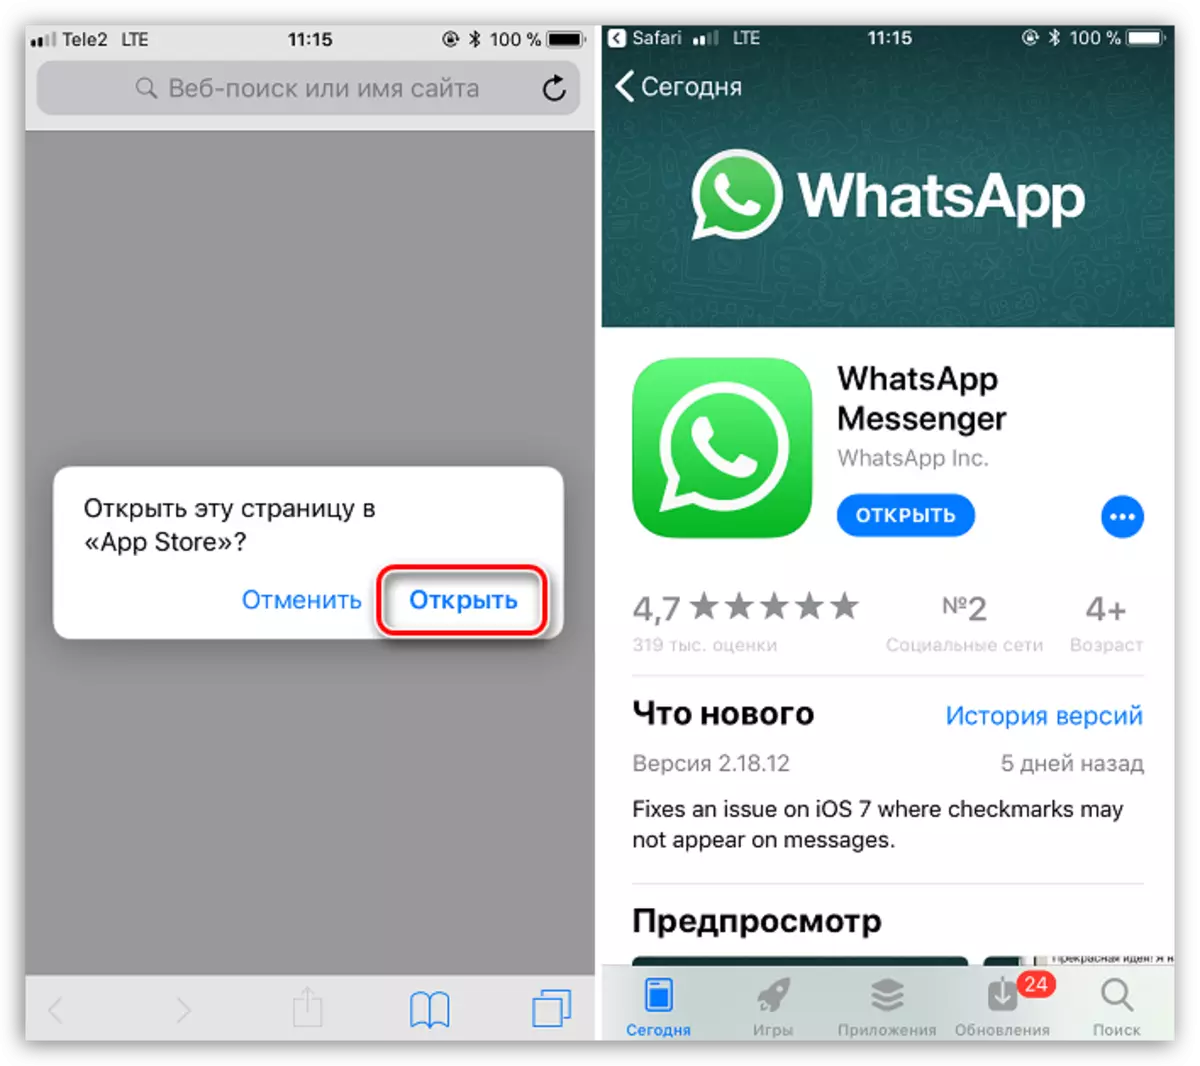 Kuvhura whatsapp muApp Store pane iyo iPhone